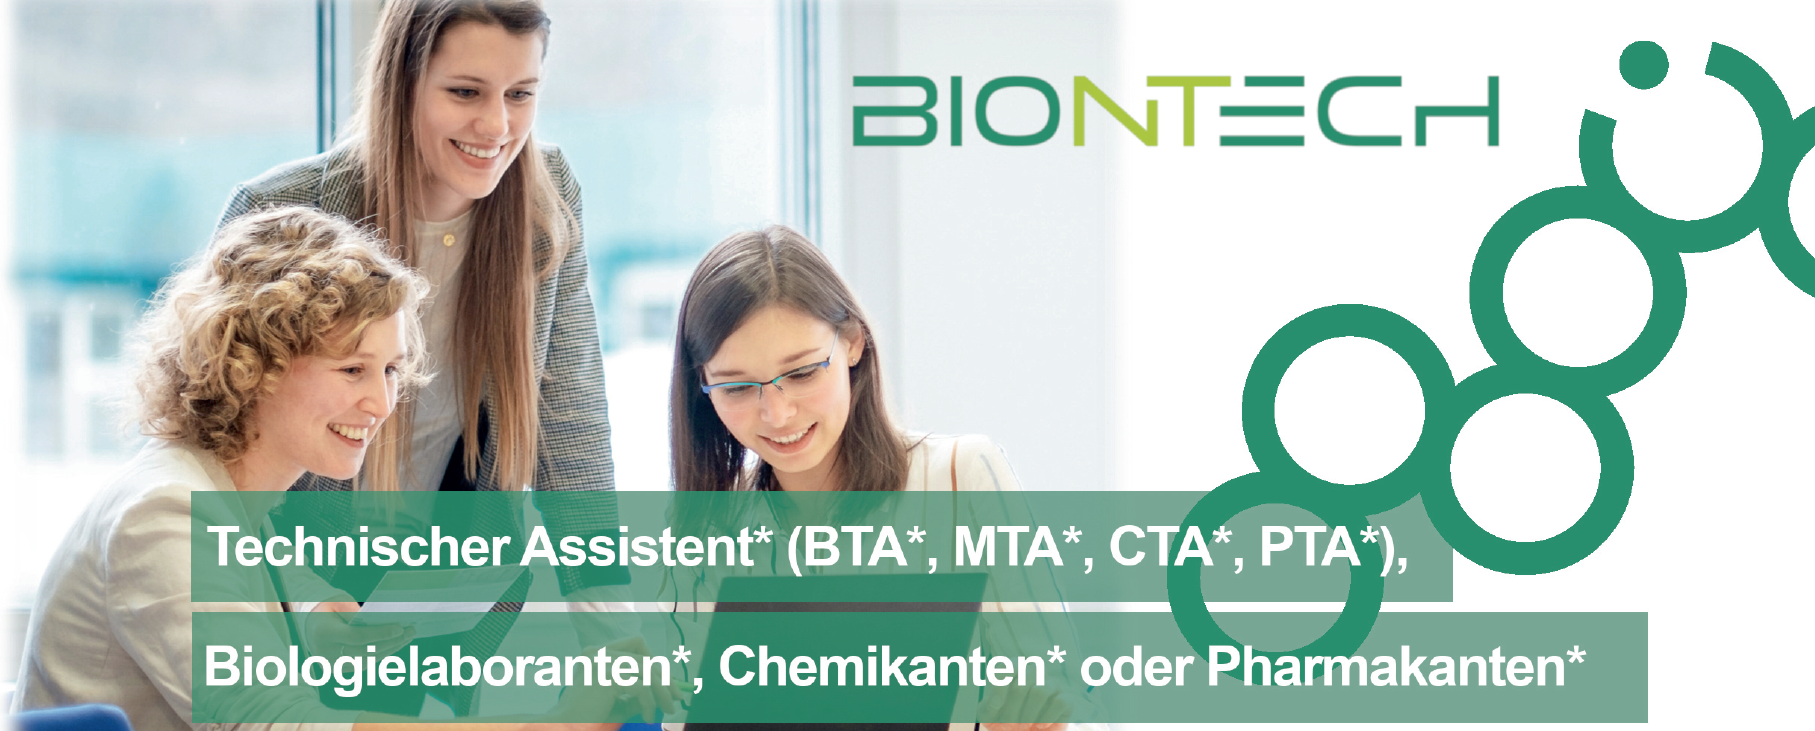 Biontech Technischer Assistent* (BTA*, MTA*, CTA*, PTA*), Biologielaboranten*, Chemikanten* oder Pharmakanten*